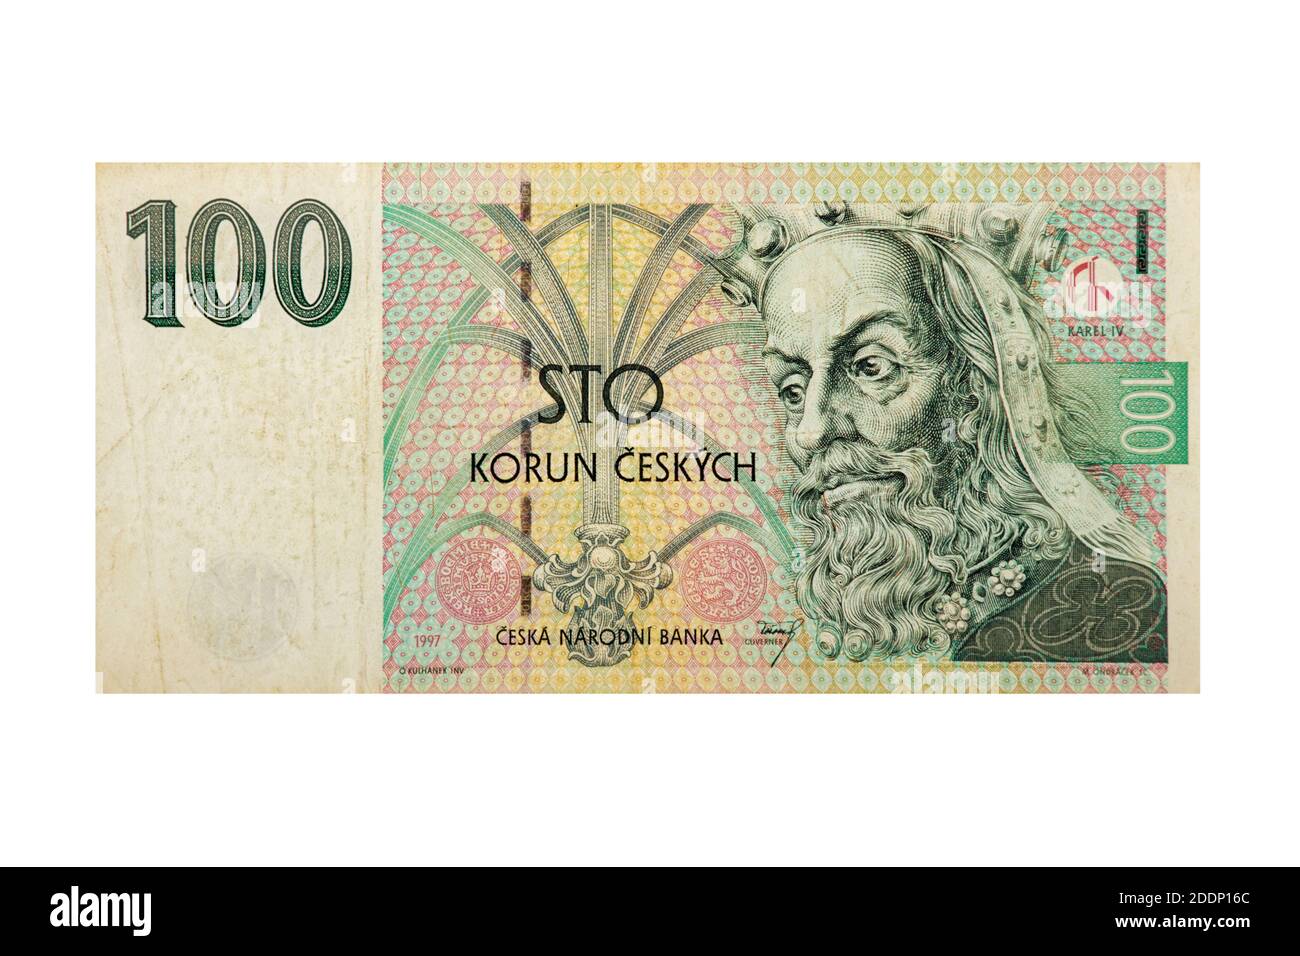 Vue de face d'une République tchèque billet de banque Koruna 100. La monnaie officielle de la République tchèque depuis 1993 Banque D'Images